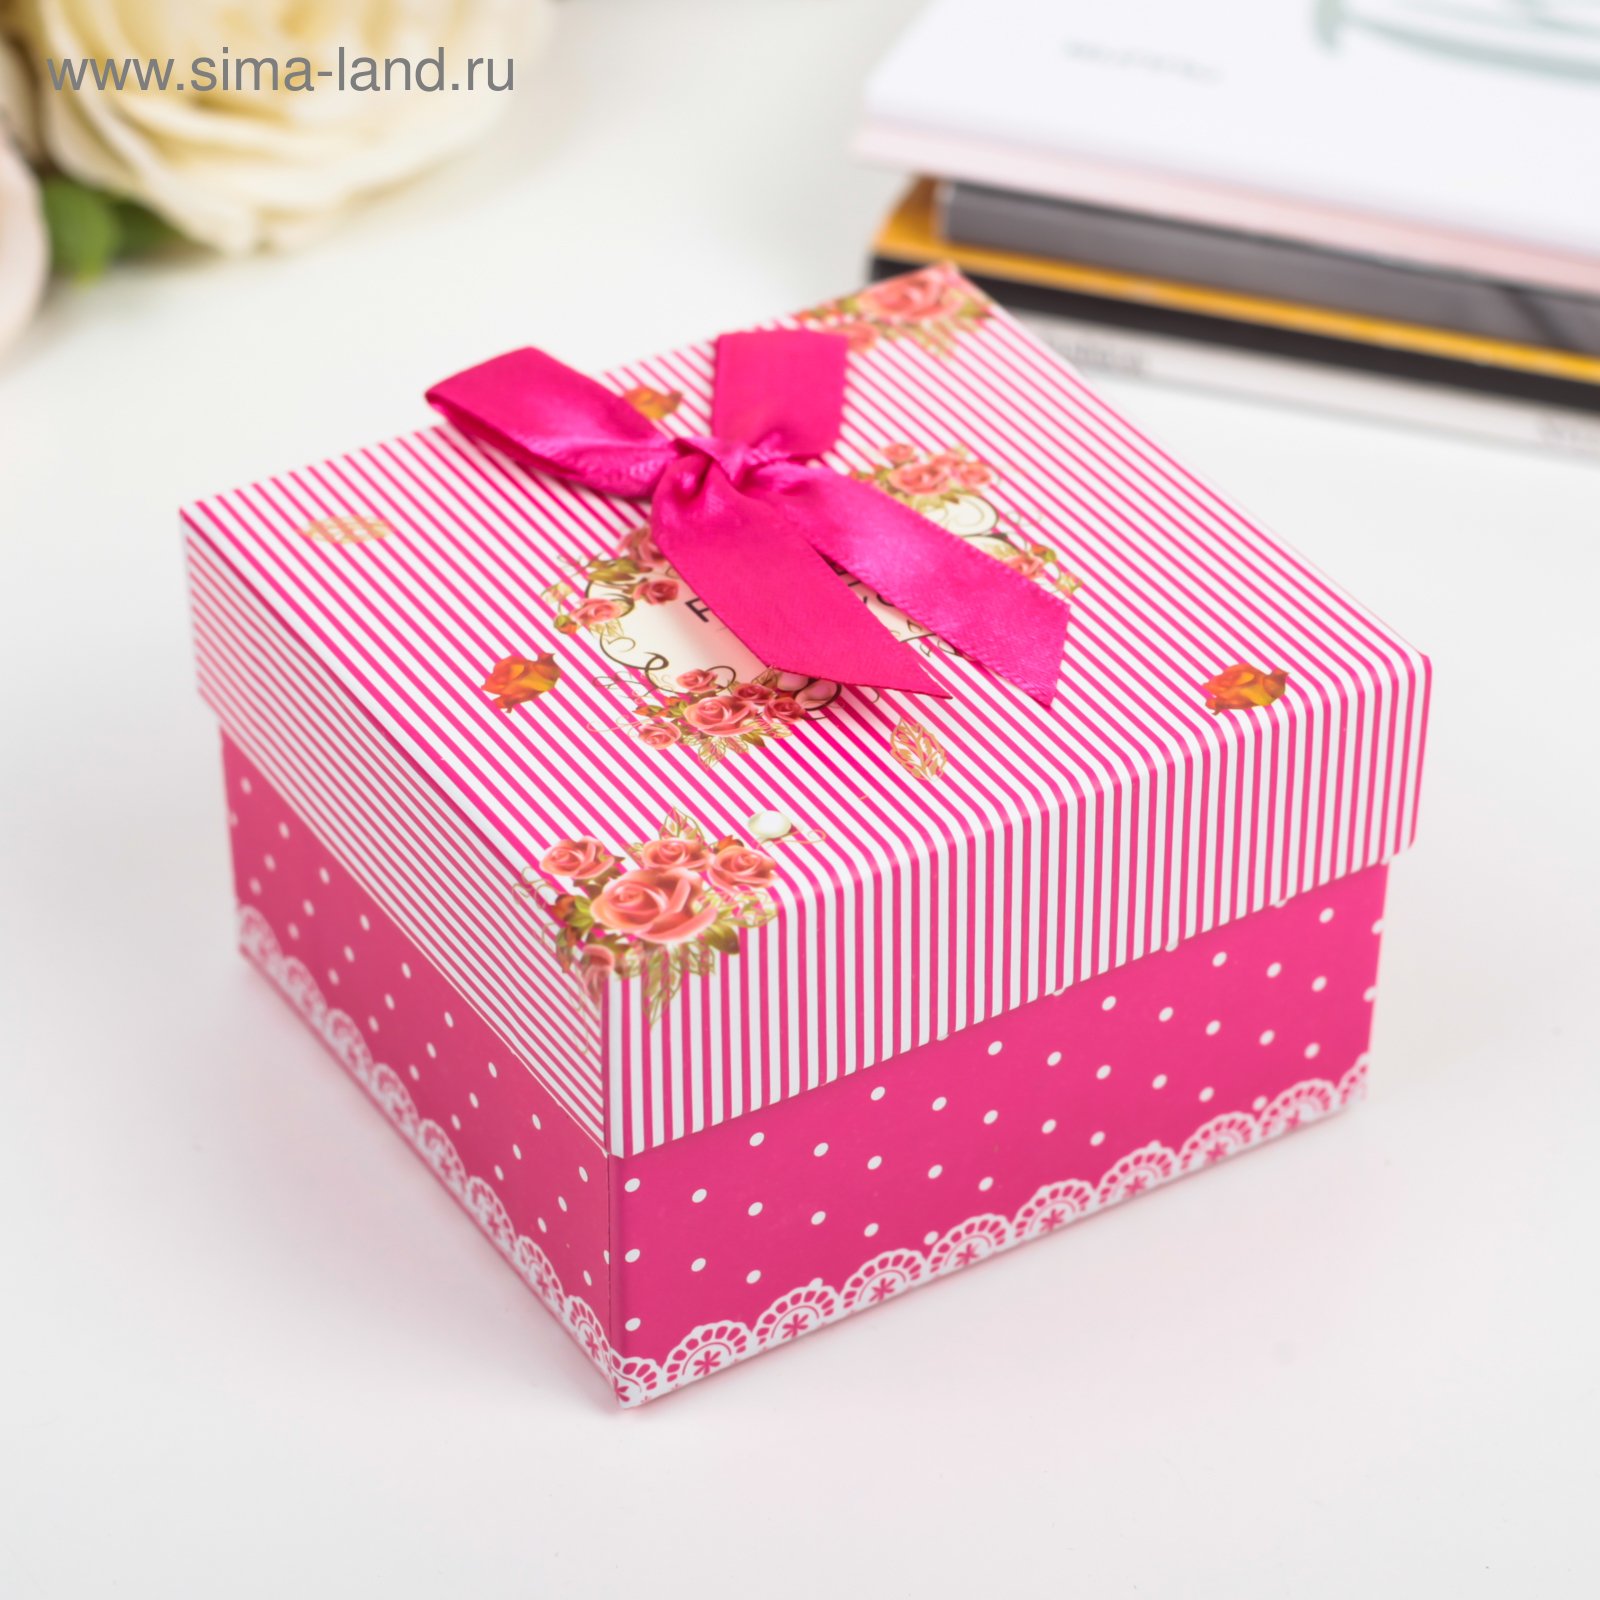 Купить красивые коробку. Коробка для подарка. Красивые подарочные коробки. Небольшие коробки для подарков. Красивая коробка для подарка.